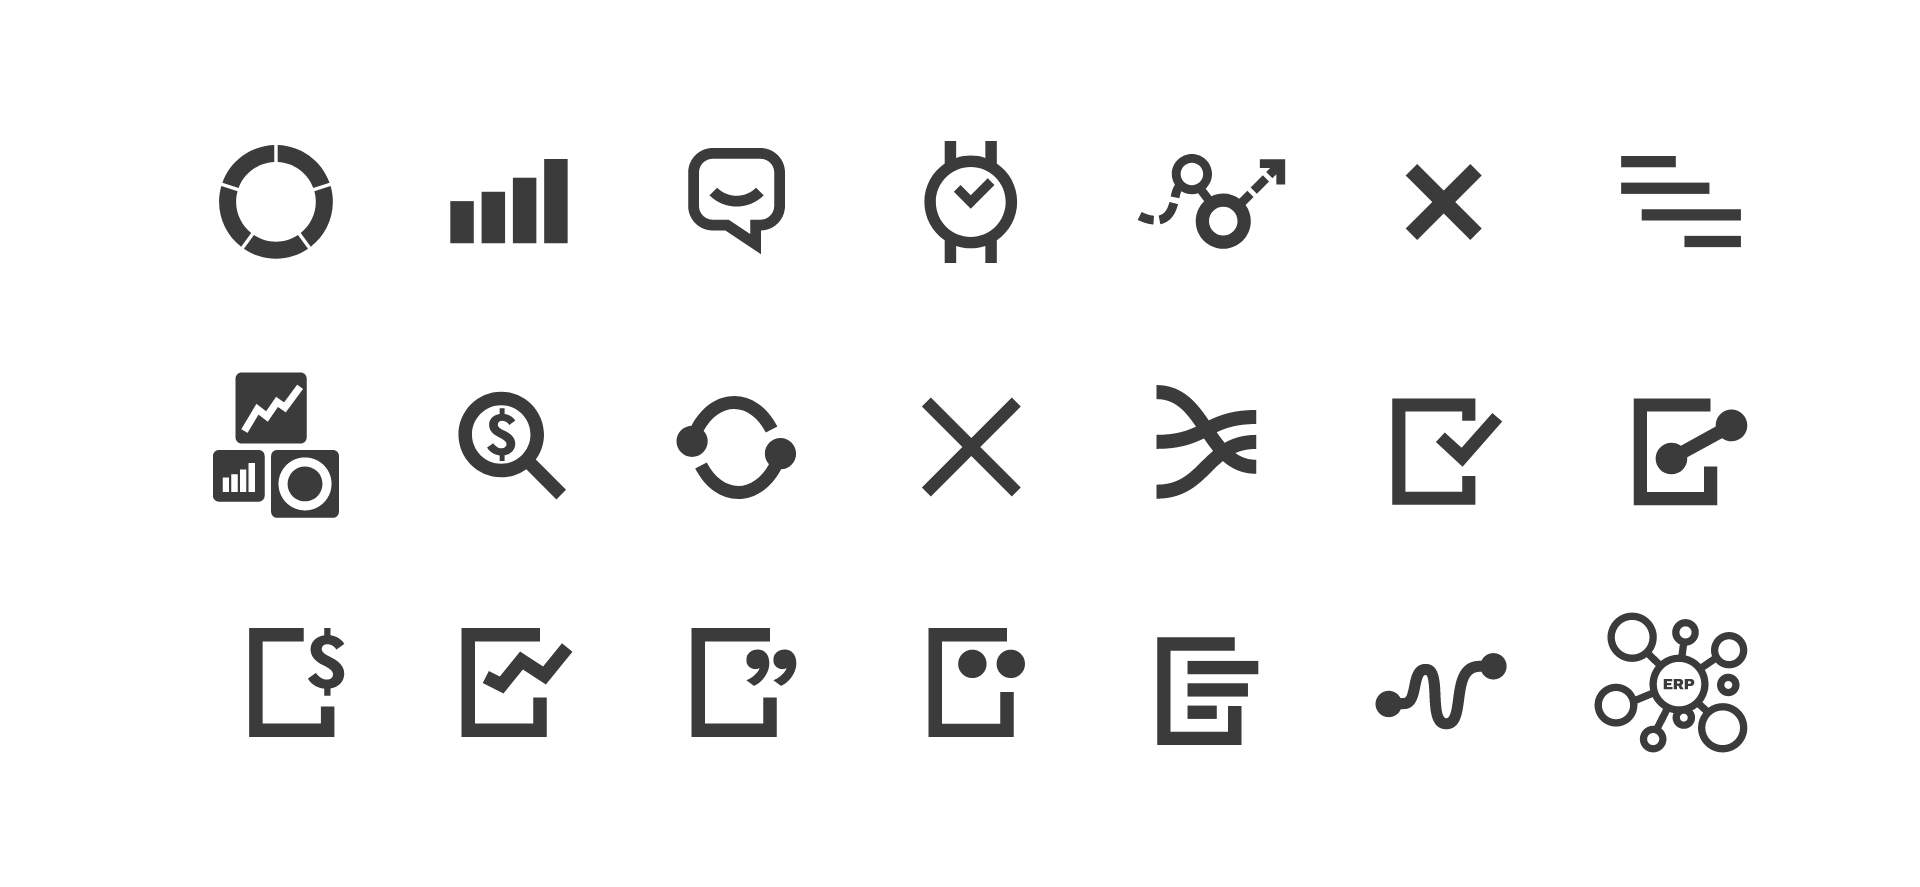 Nimbus brand icons